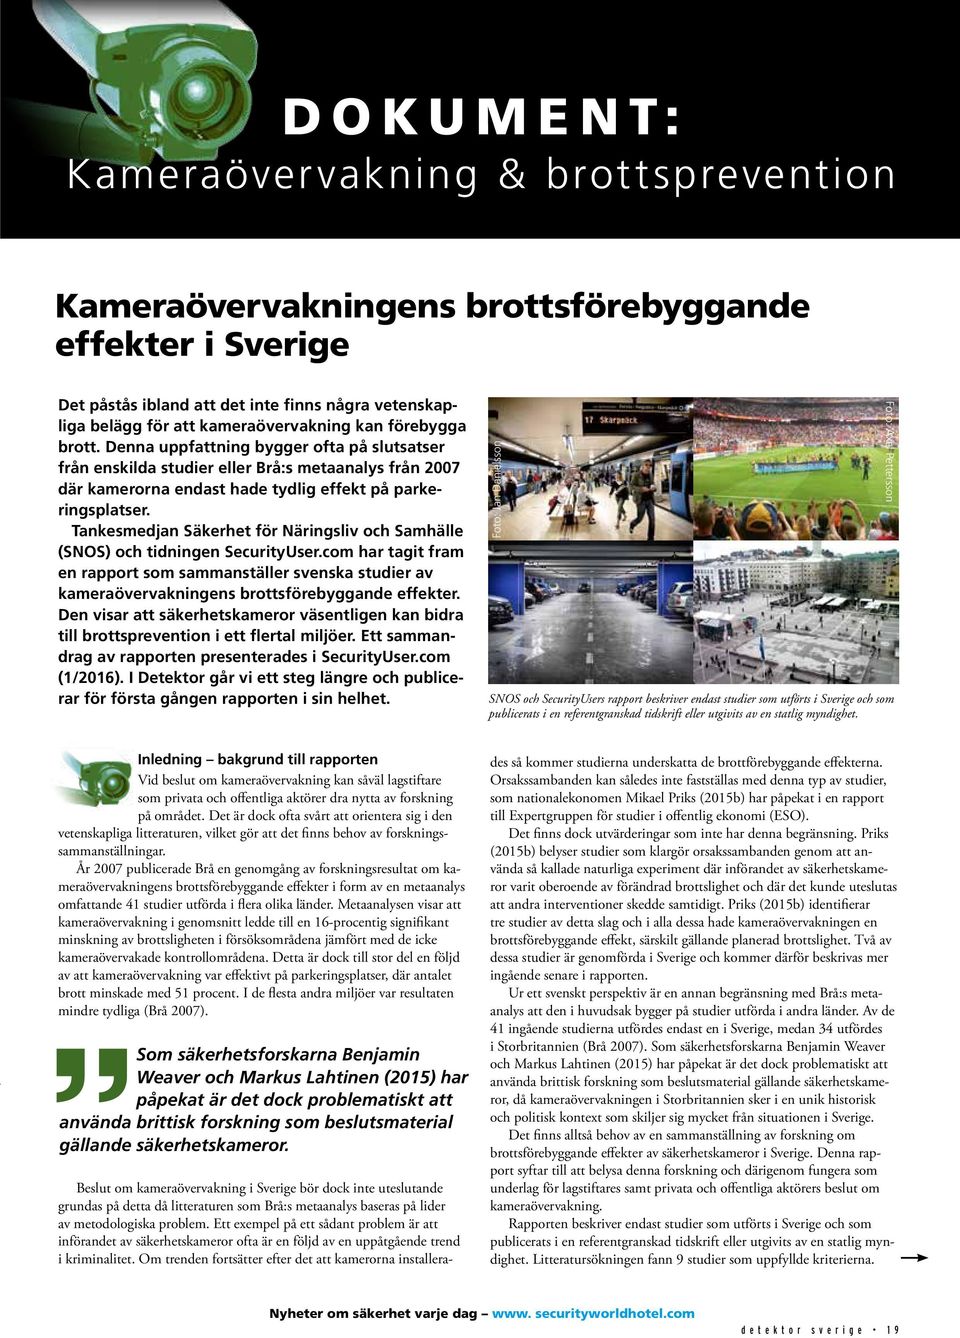 Tankesmedjan Säkerhet för Näringsliv och Samhälle (SNOS) och tidningen SecurityUser.com har tagit fram en rapport som sammanställer svenska studier av kameraövervakningens brottsförebyggande effekter.